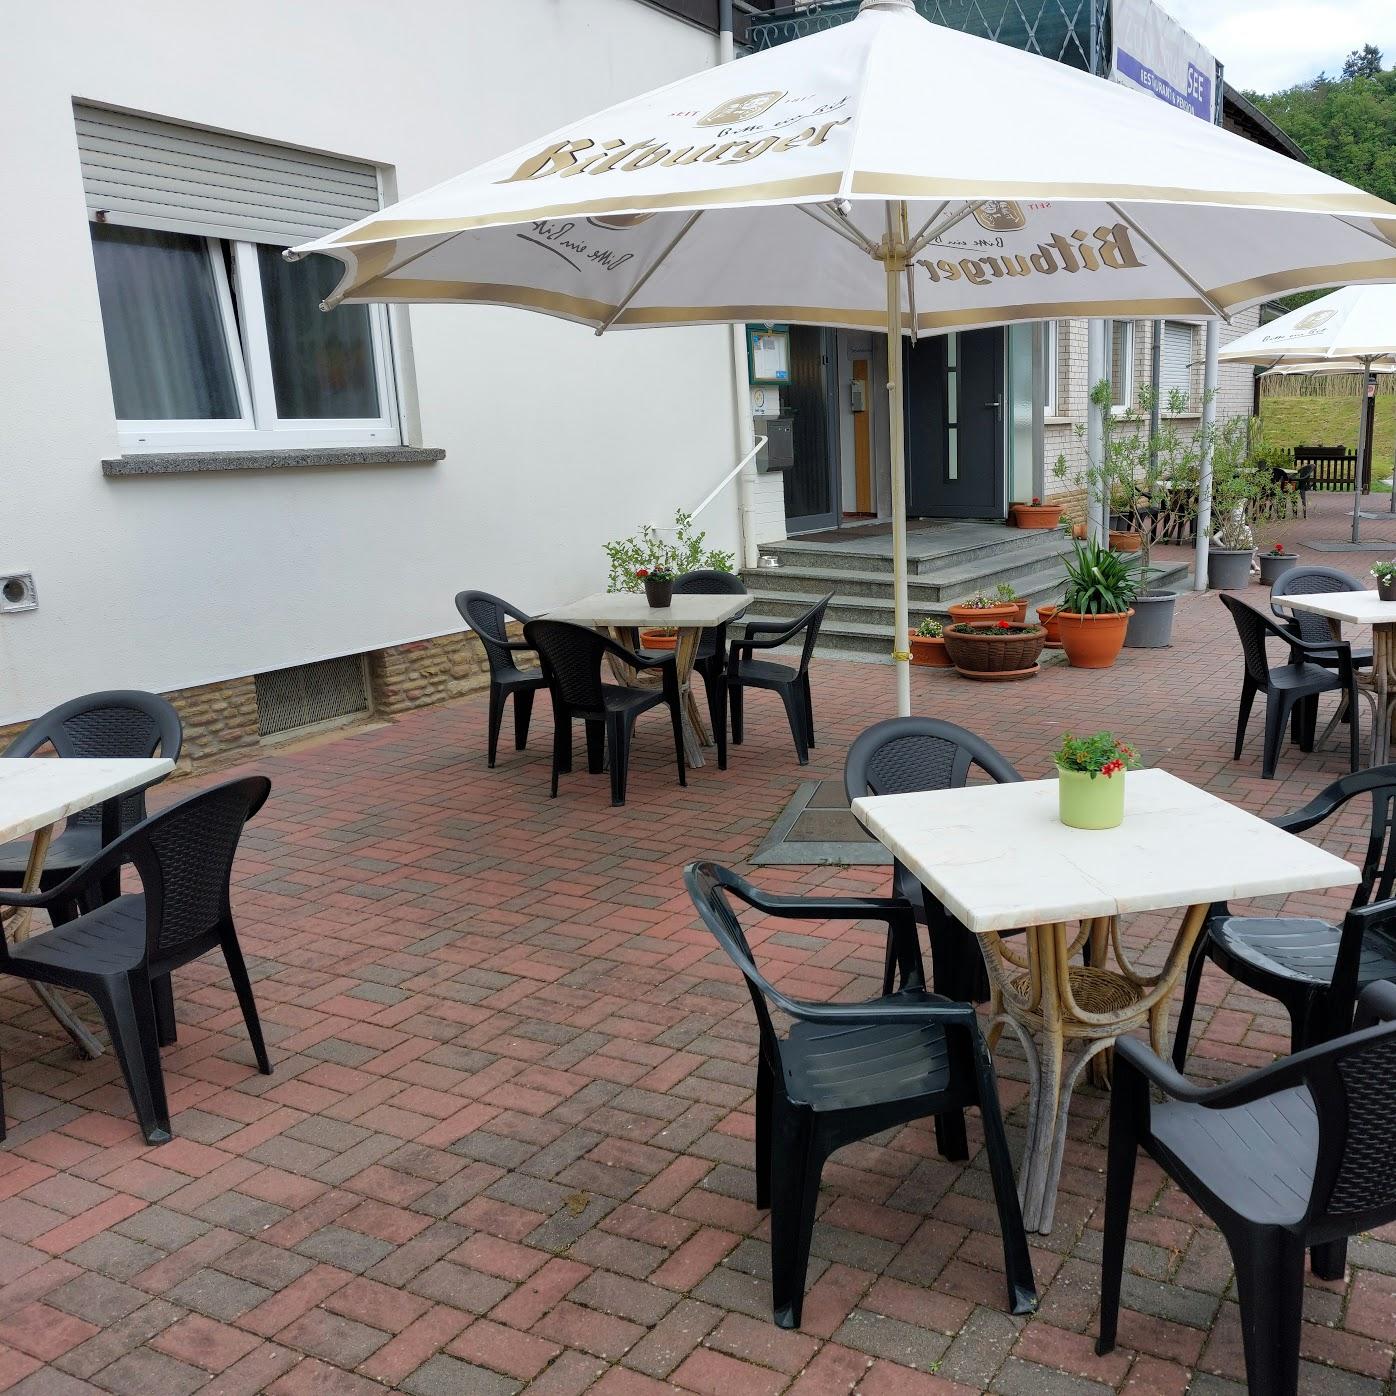 Restaurant "Zum Stausee, Restaurant & Pension" in Niederhausen